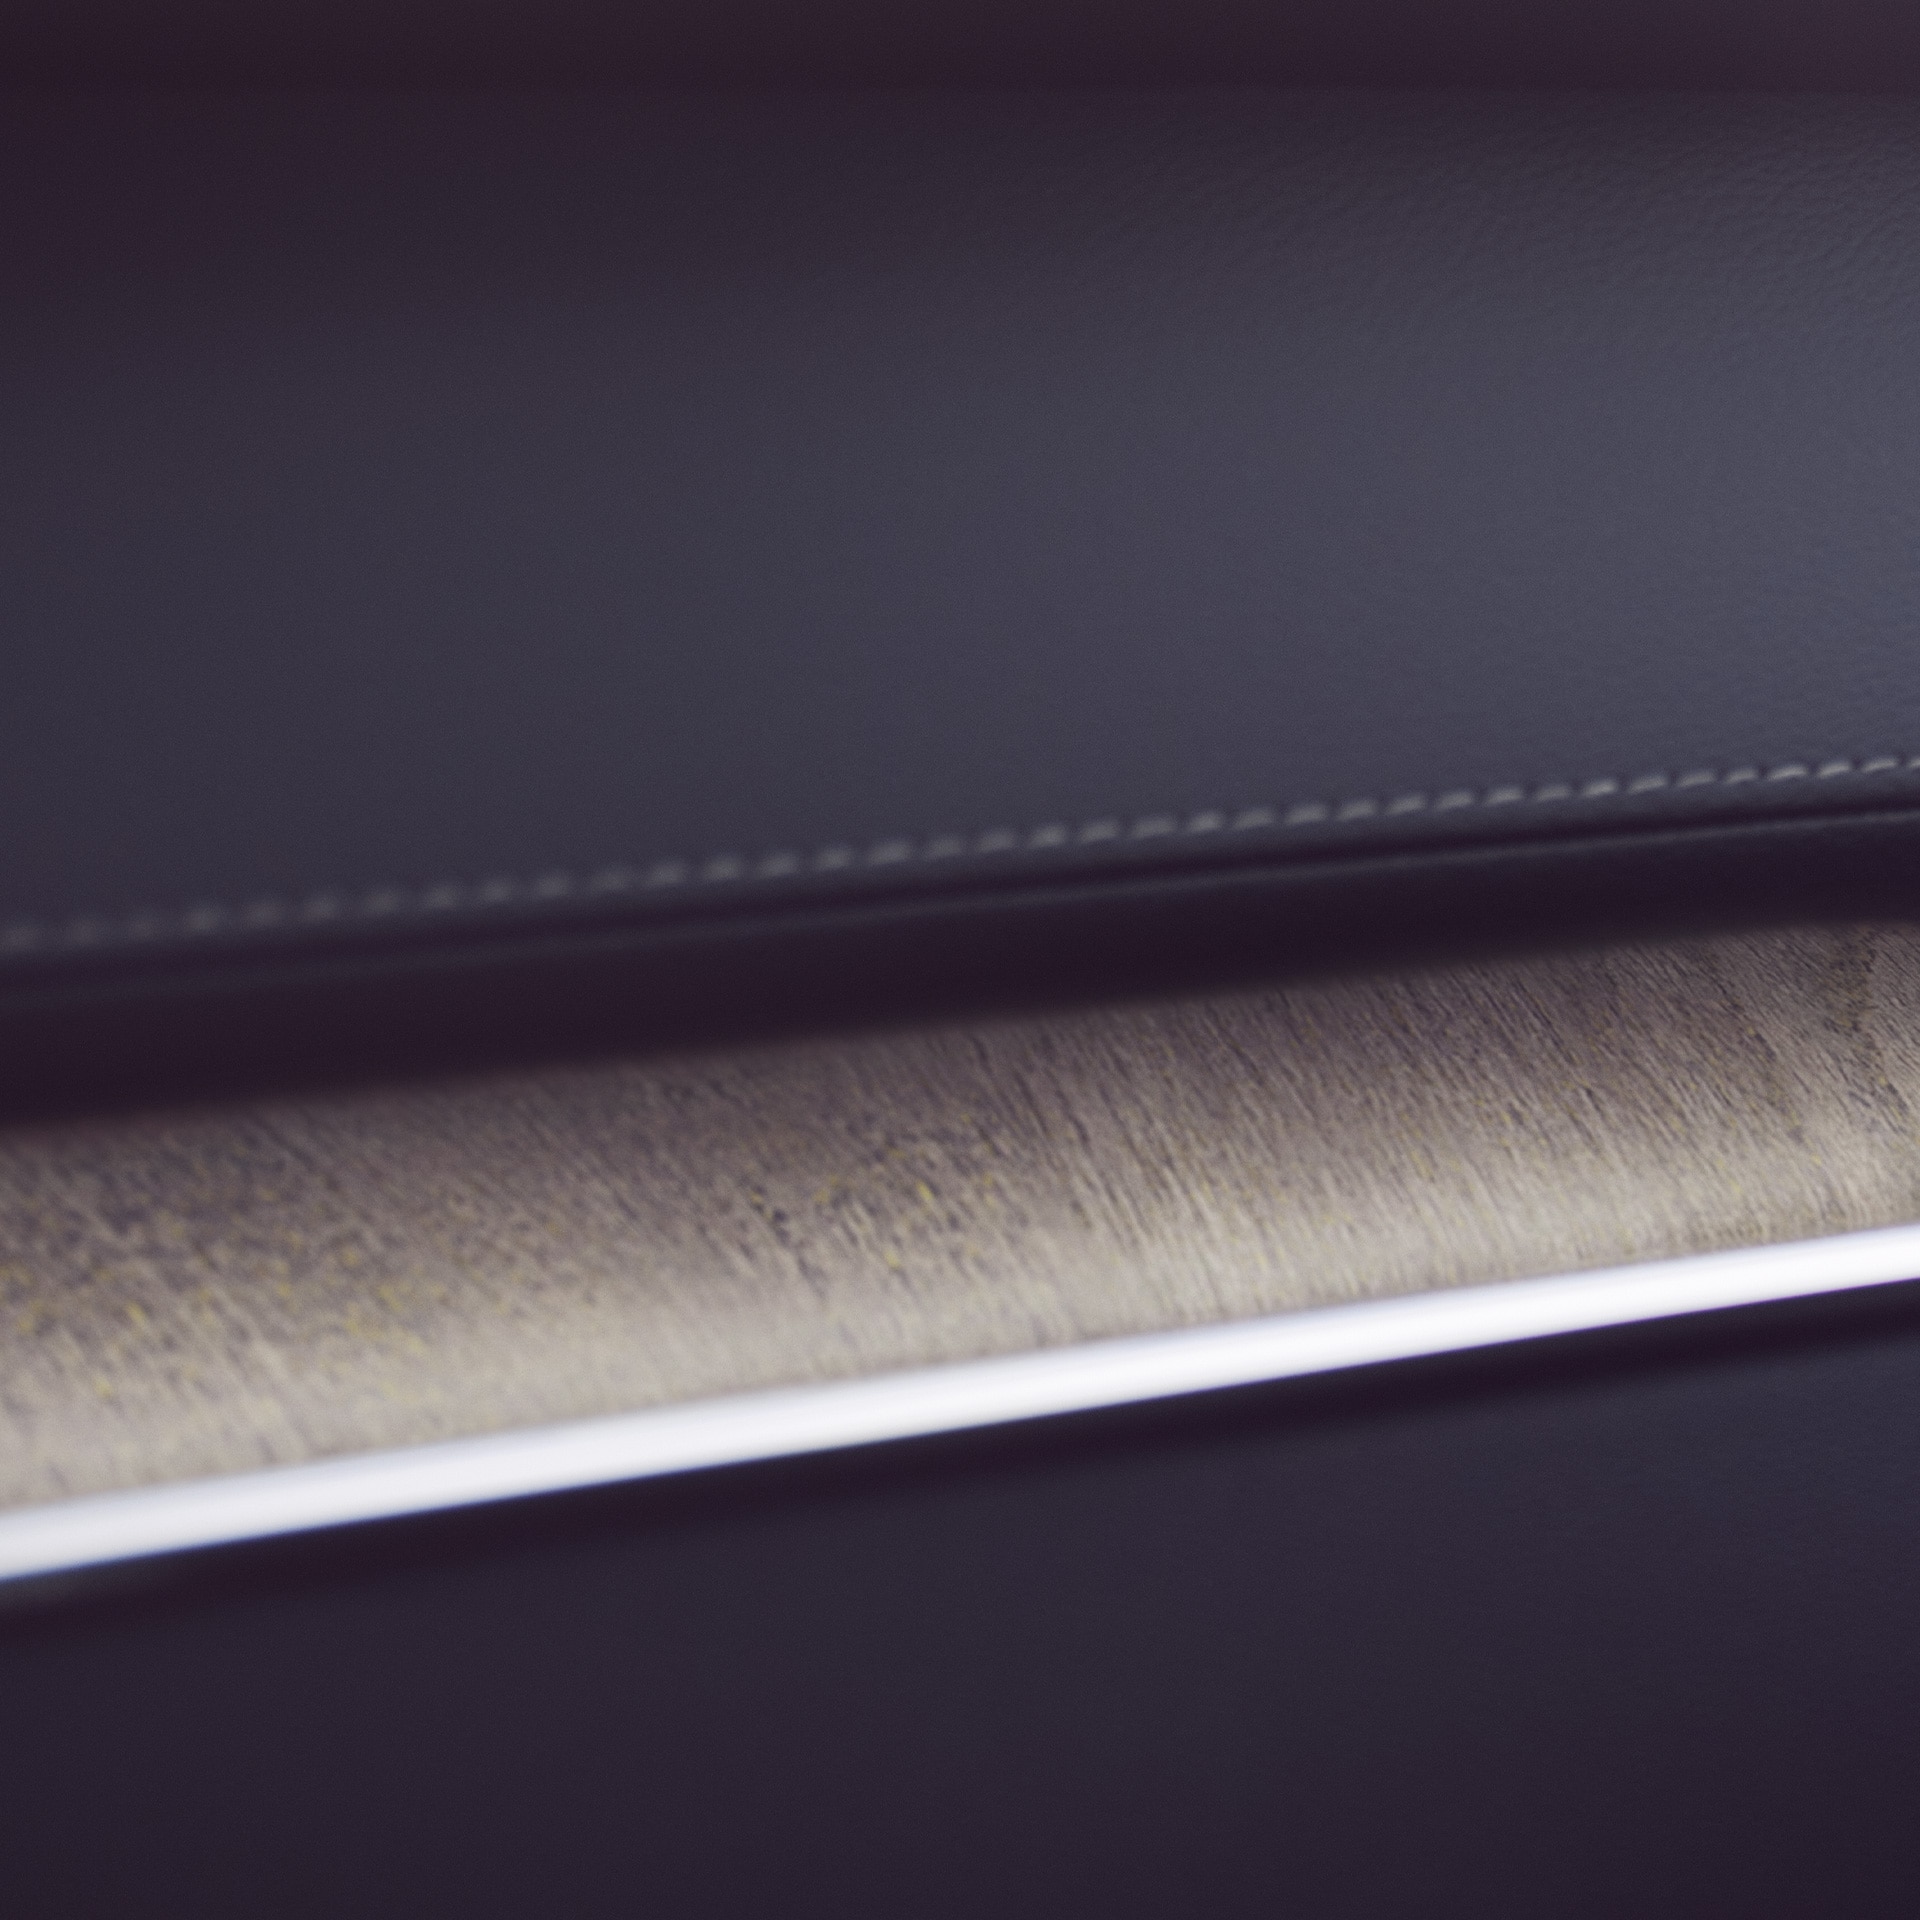 Les incrustations décoratives en bois du Volvo XC60 apportent une touche naturelle.